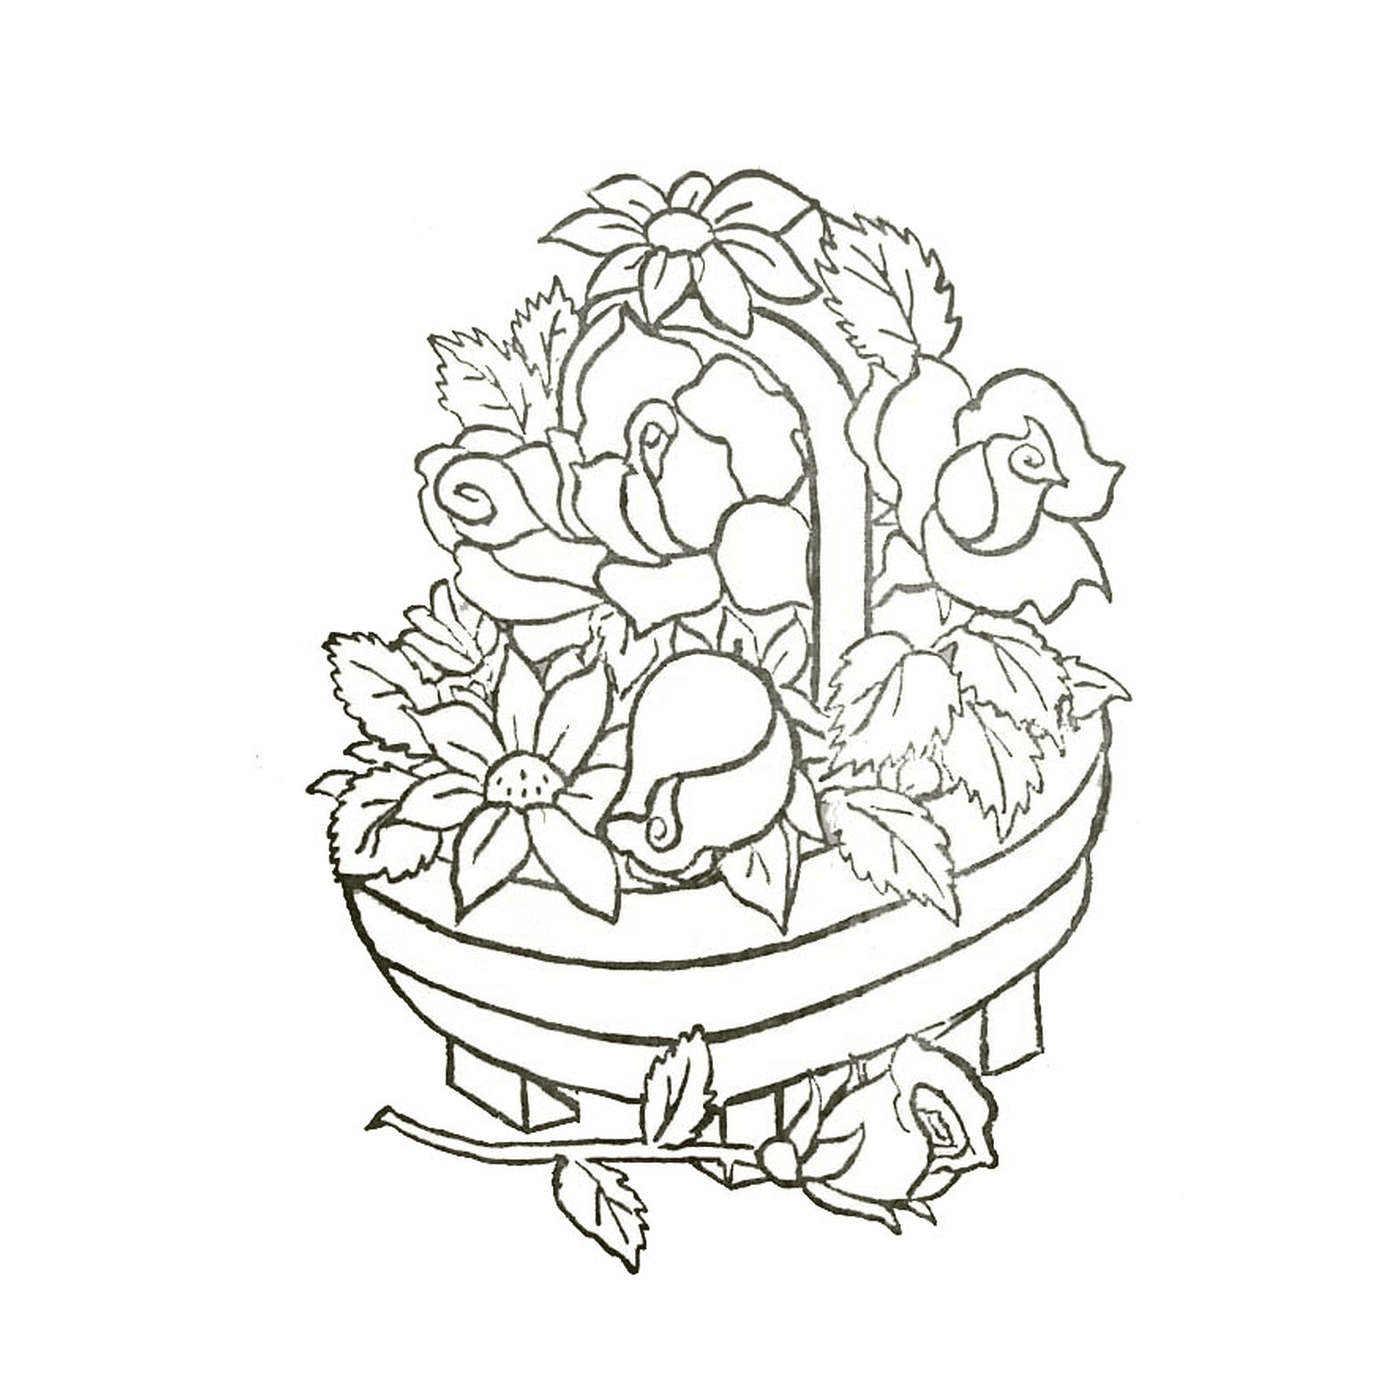  Uma cesta cheia de flores 